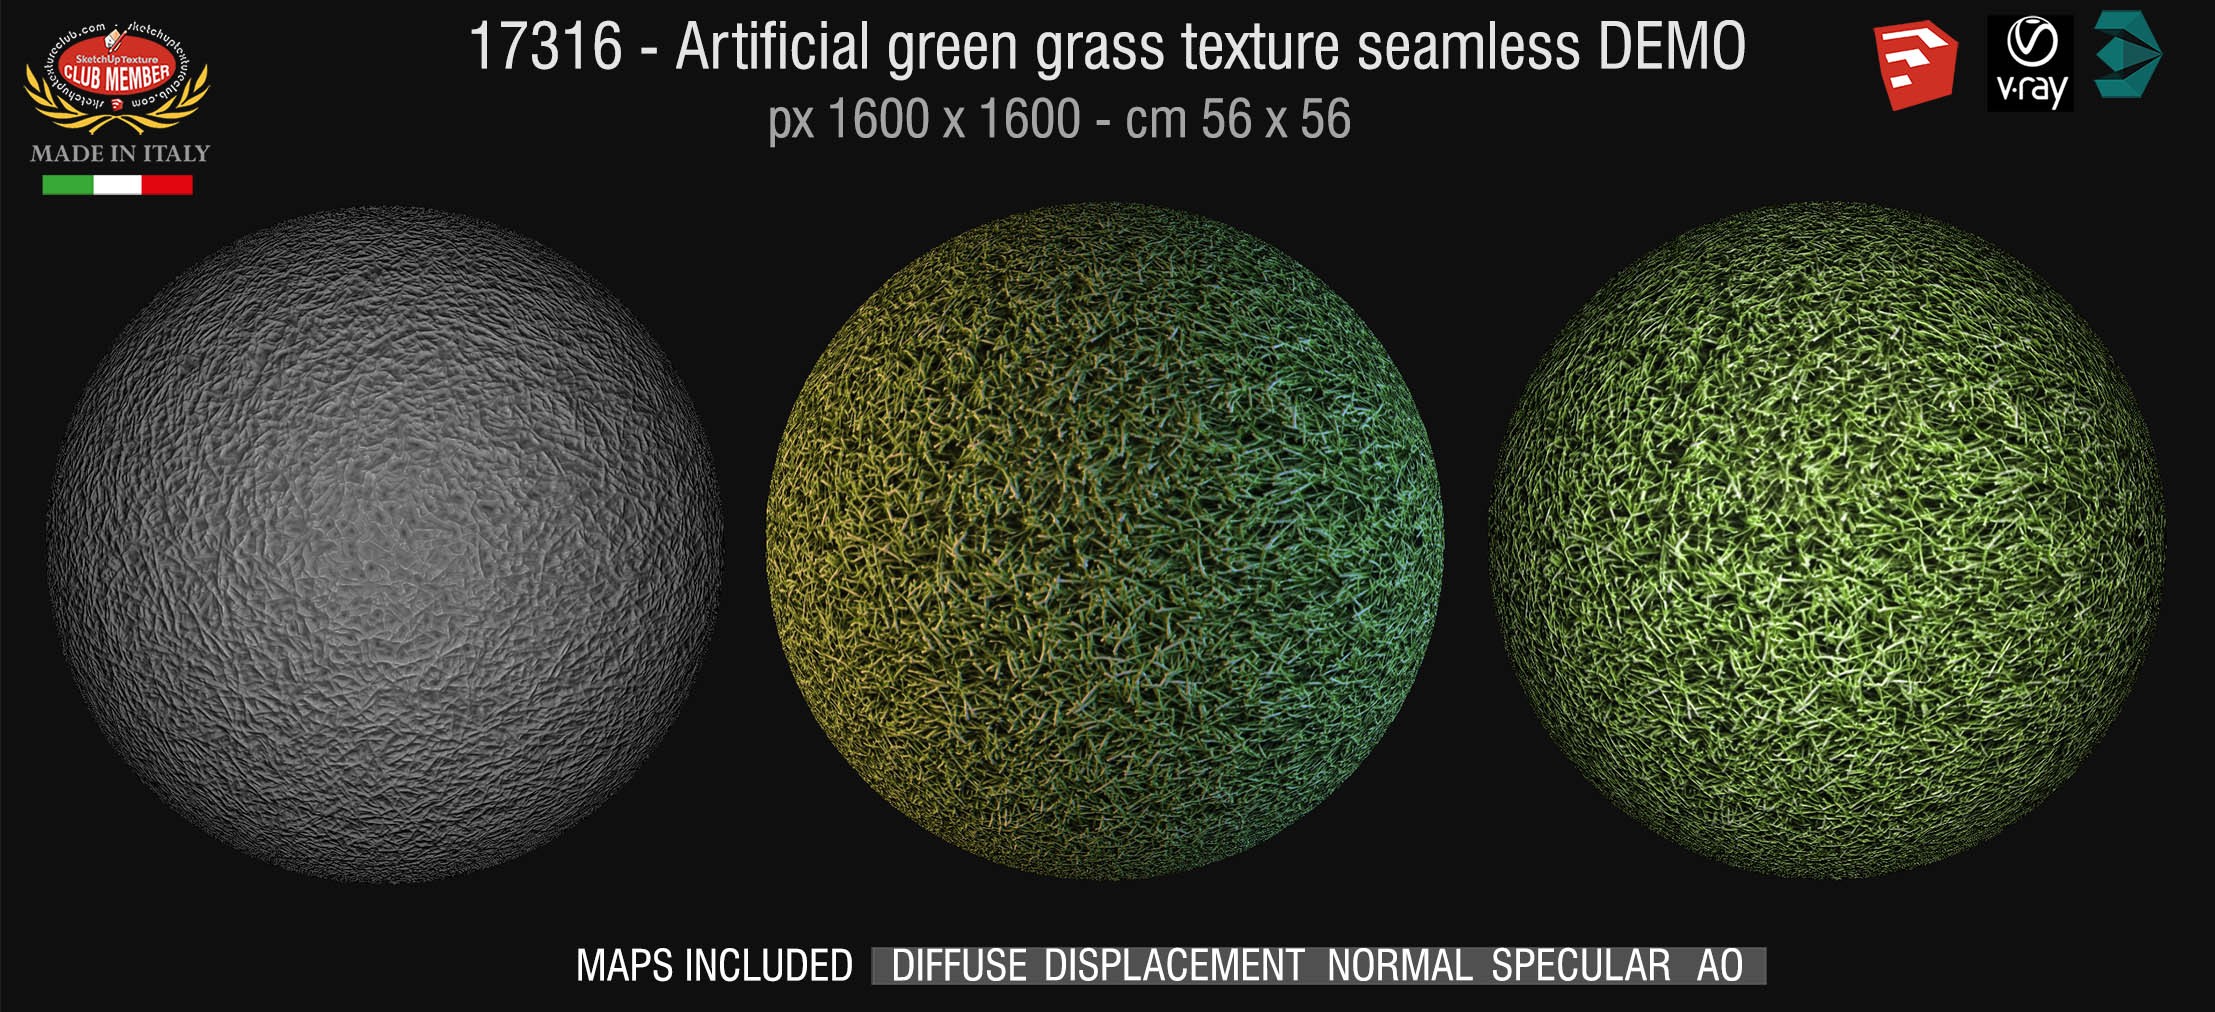 17316 HR Artificial green grass texture + maps DEMO